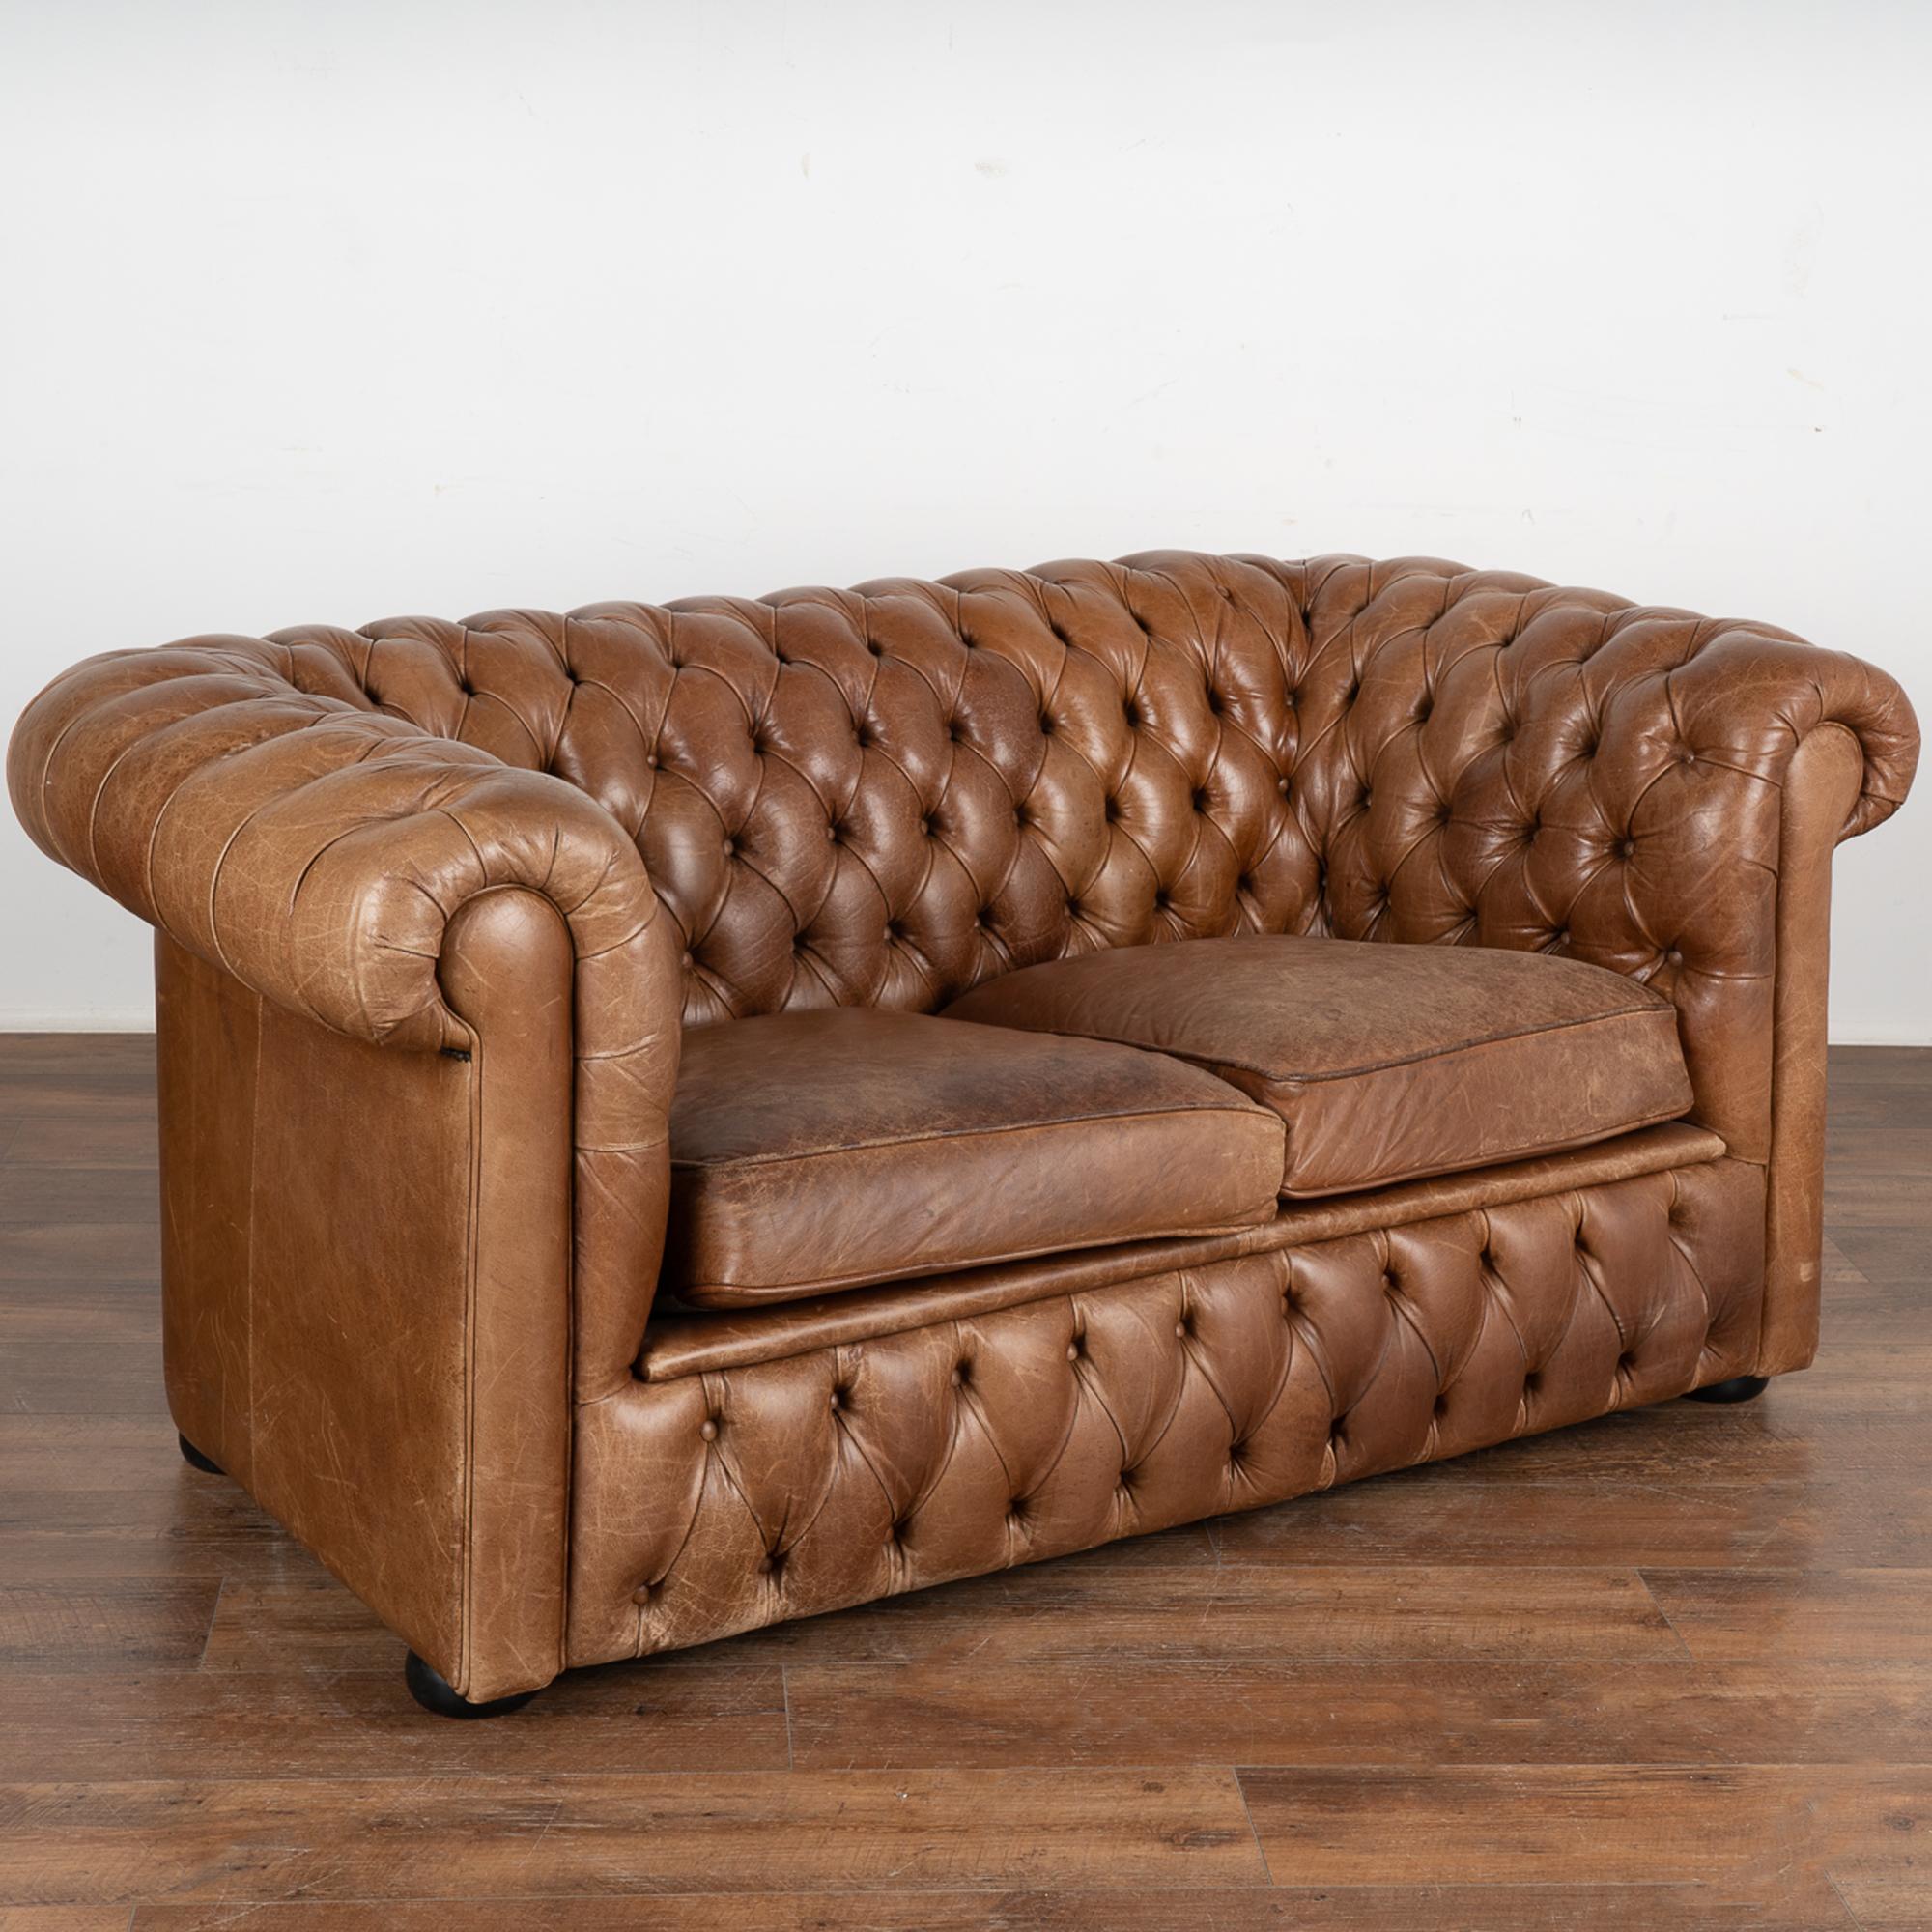 Danish Pair, Brown Leather Chesterfield 2 Seat Sofa & Club Chair, Denmark circa 1960-70